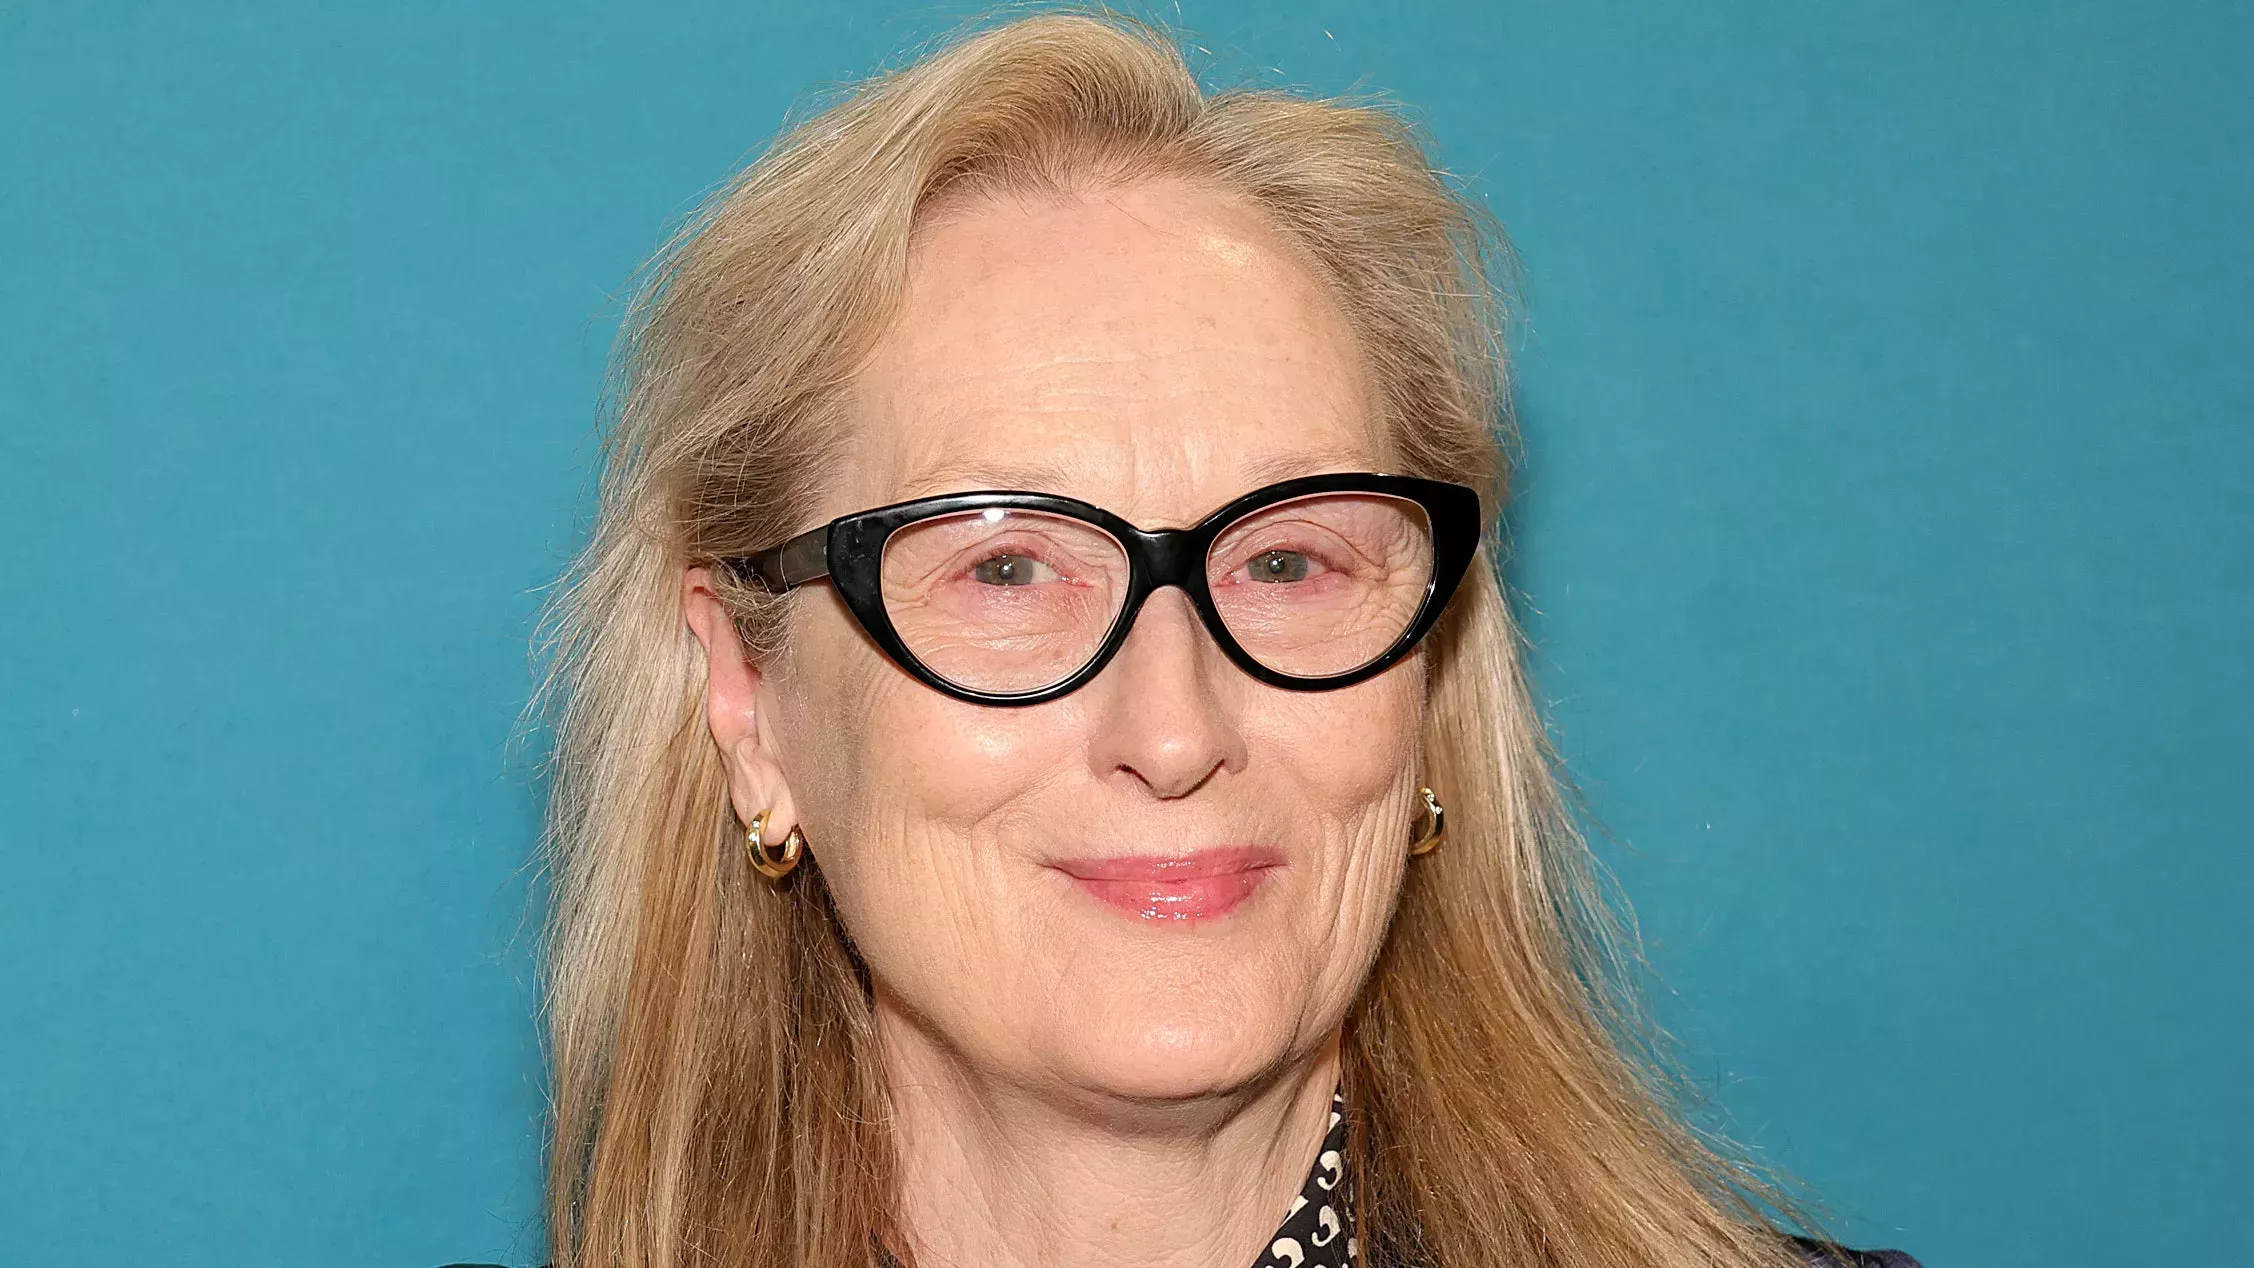 El pelo de Meryl Streep ha pasado de rubio a blanco total